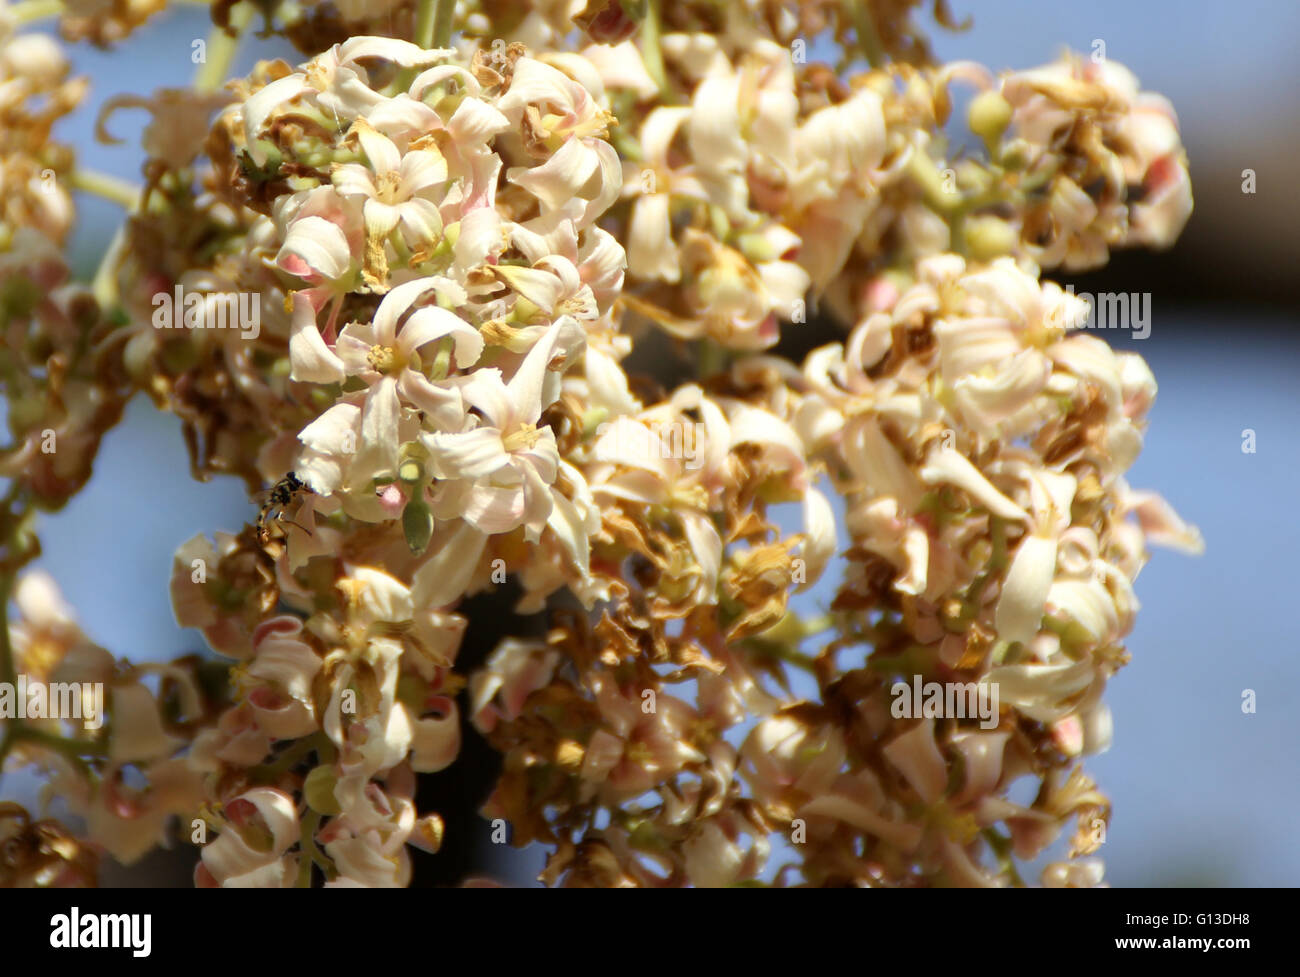 Reutealis trisperma, Filipina tung, árbol caducifolio de Filipinas con hojas ovales cordiforme y unisexuadas pálidas flores blancas Foto de stock